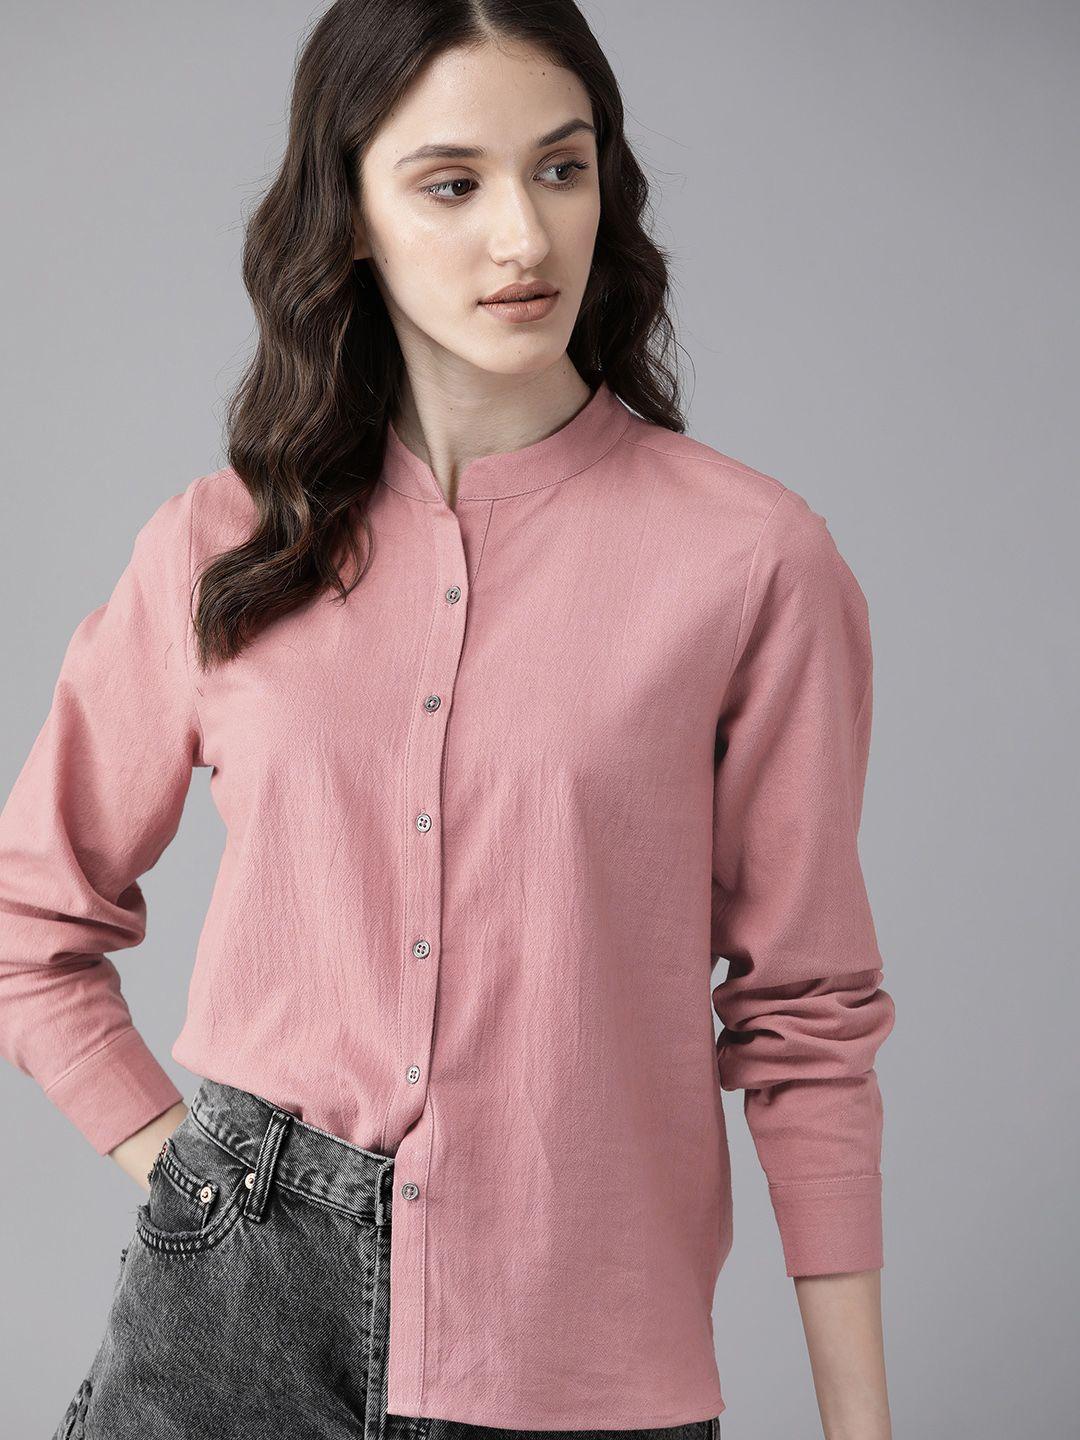 roadster women rose opaque casual shirt